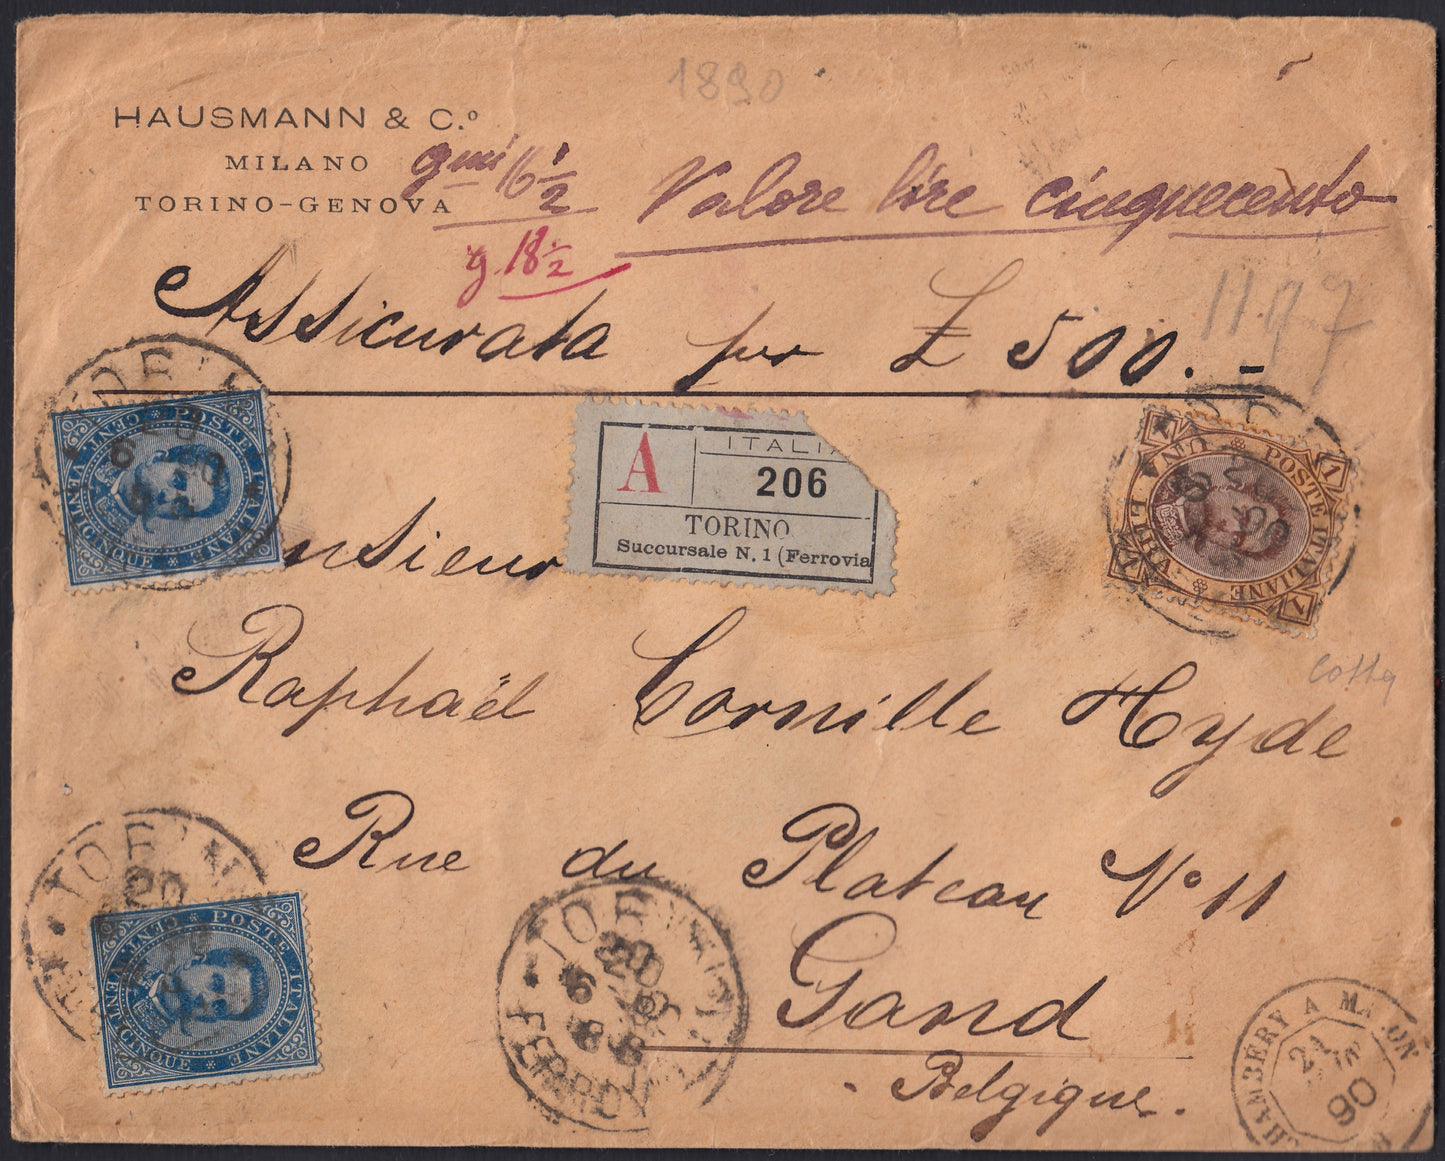 UMBSP8 - 1890 - Lettera assicurata spedita da Torino Ferrovia per Gand (Belgio) 20/6/1880 affrancata con Umberto I c. 25 azzurro due esemplari + L. 1 bruno e giallo (40 + 48).